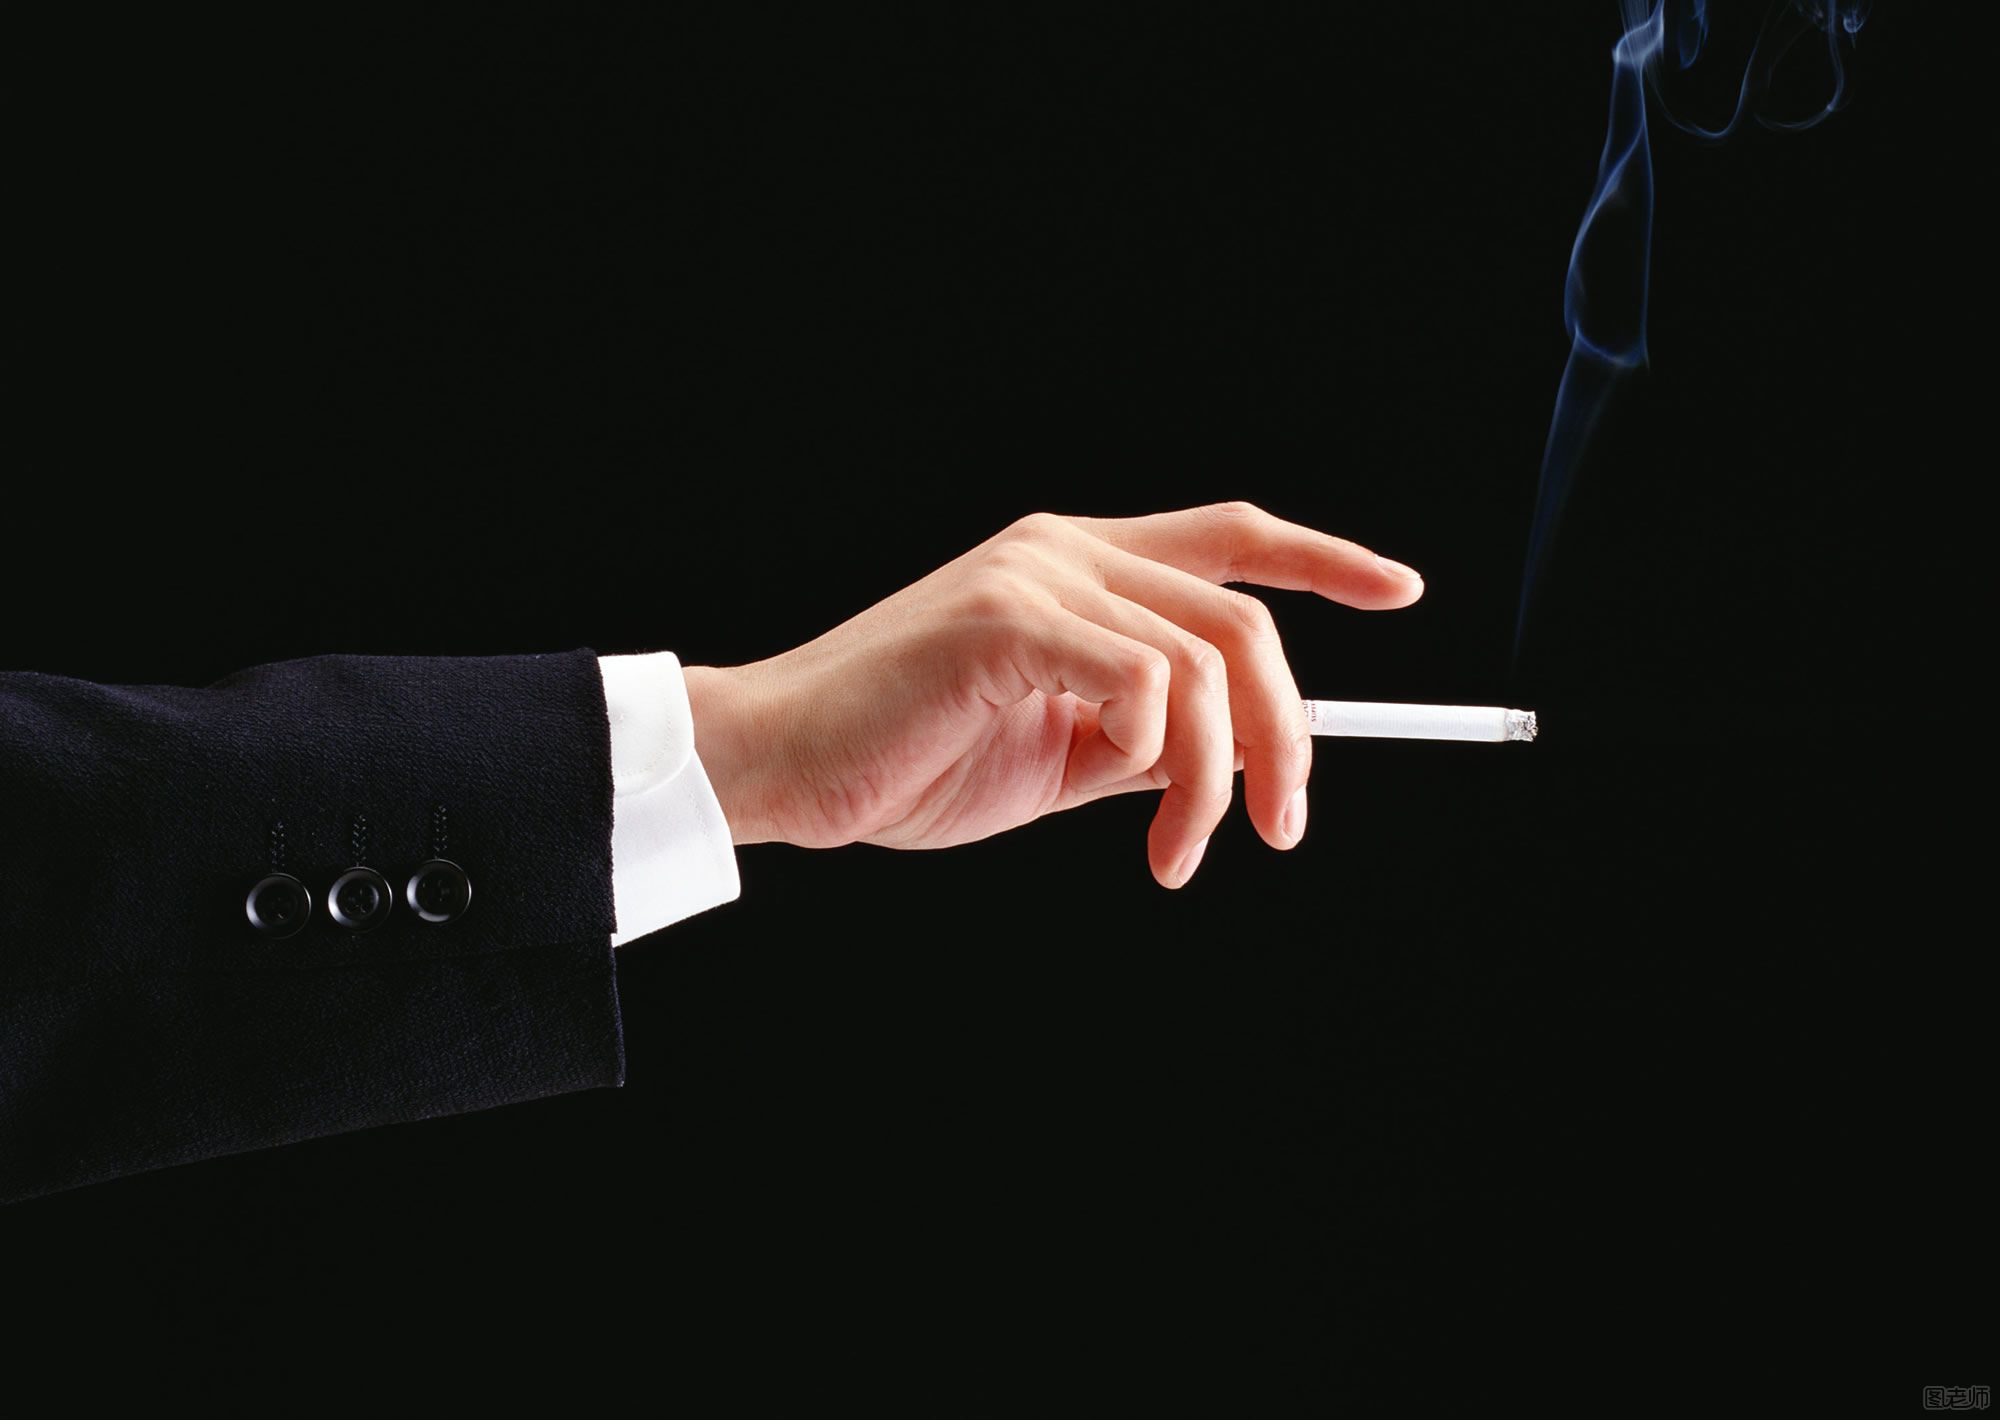 为减少青少年吸烟委员建议每包烟不低于10元 抽烟的危害